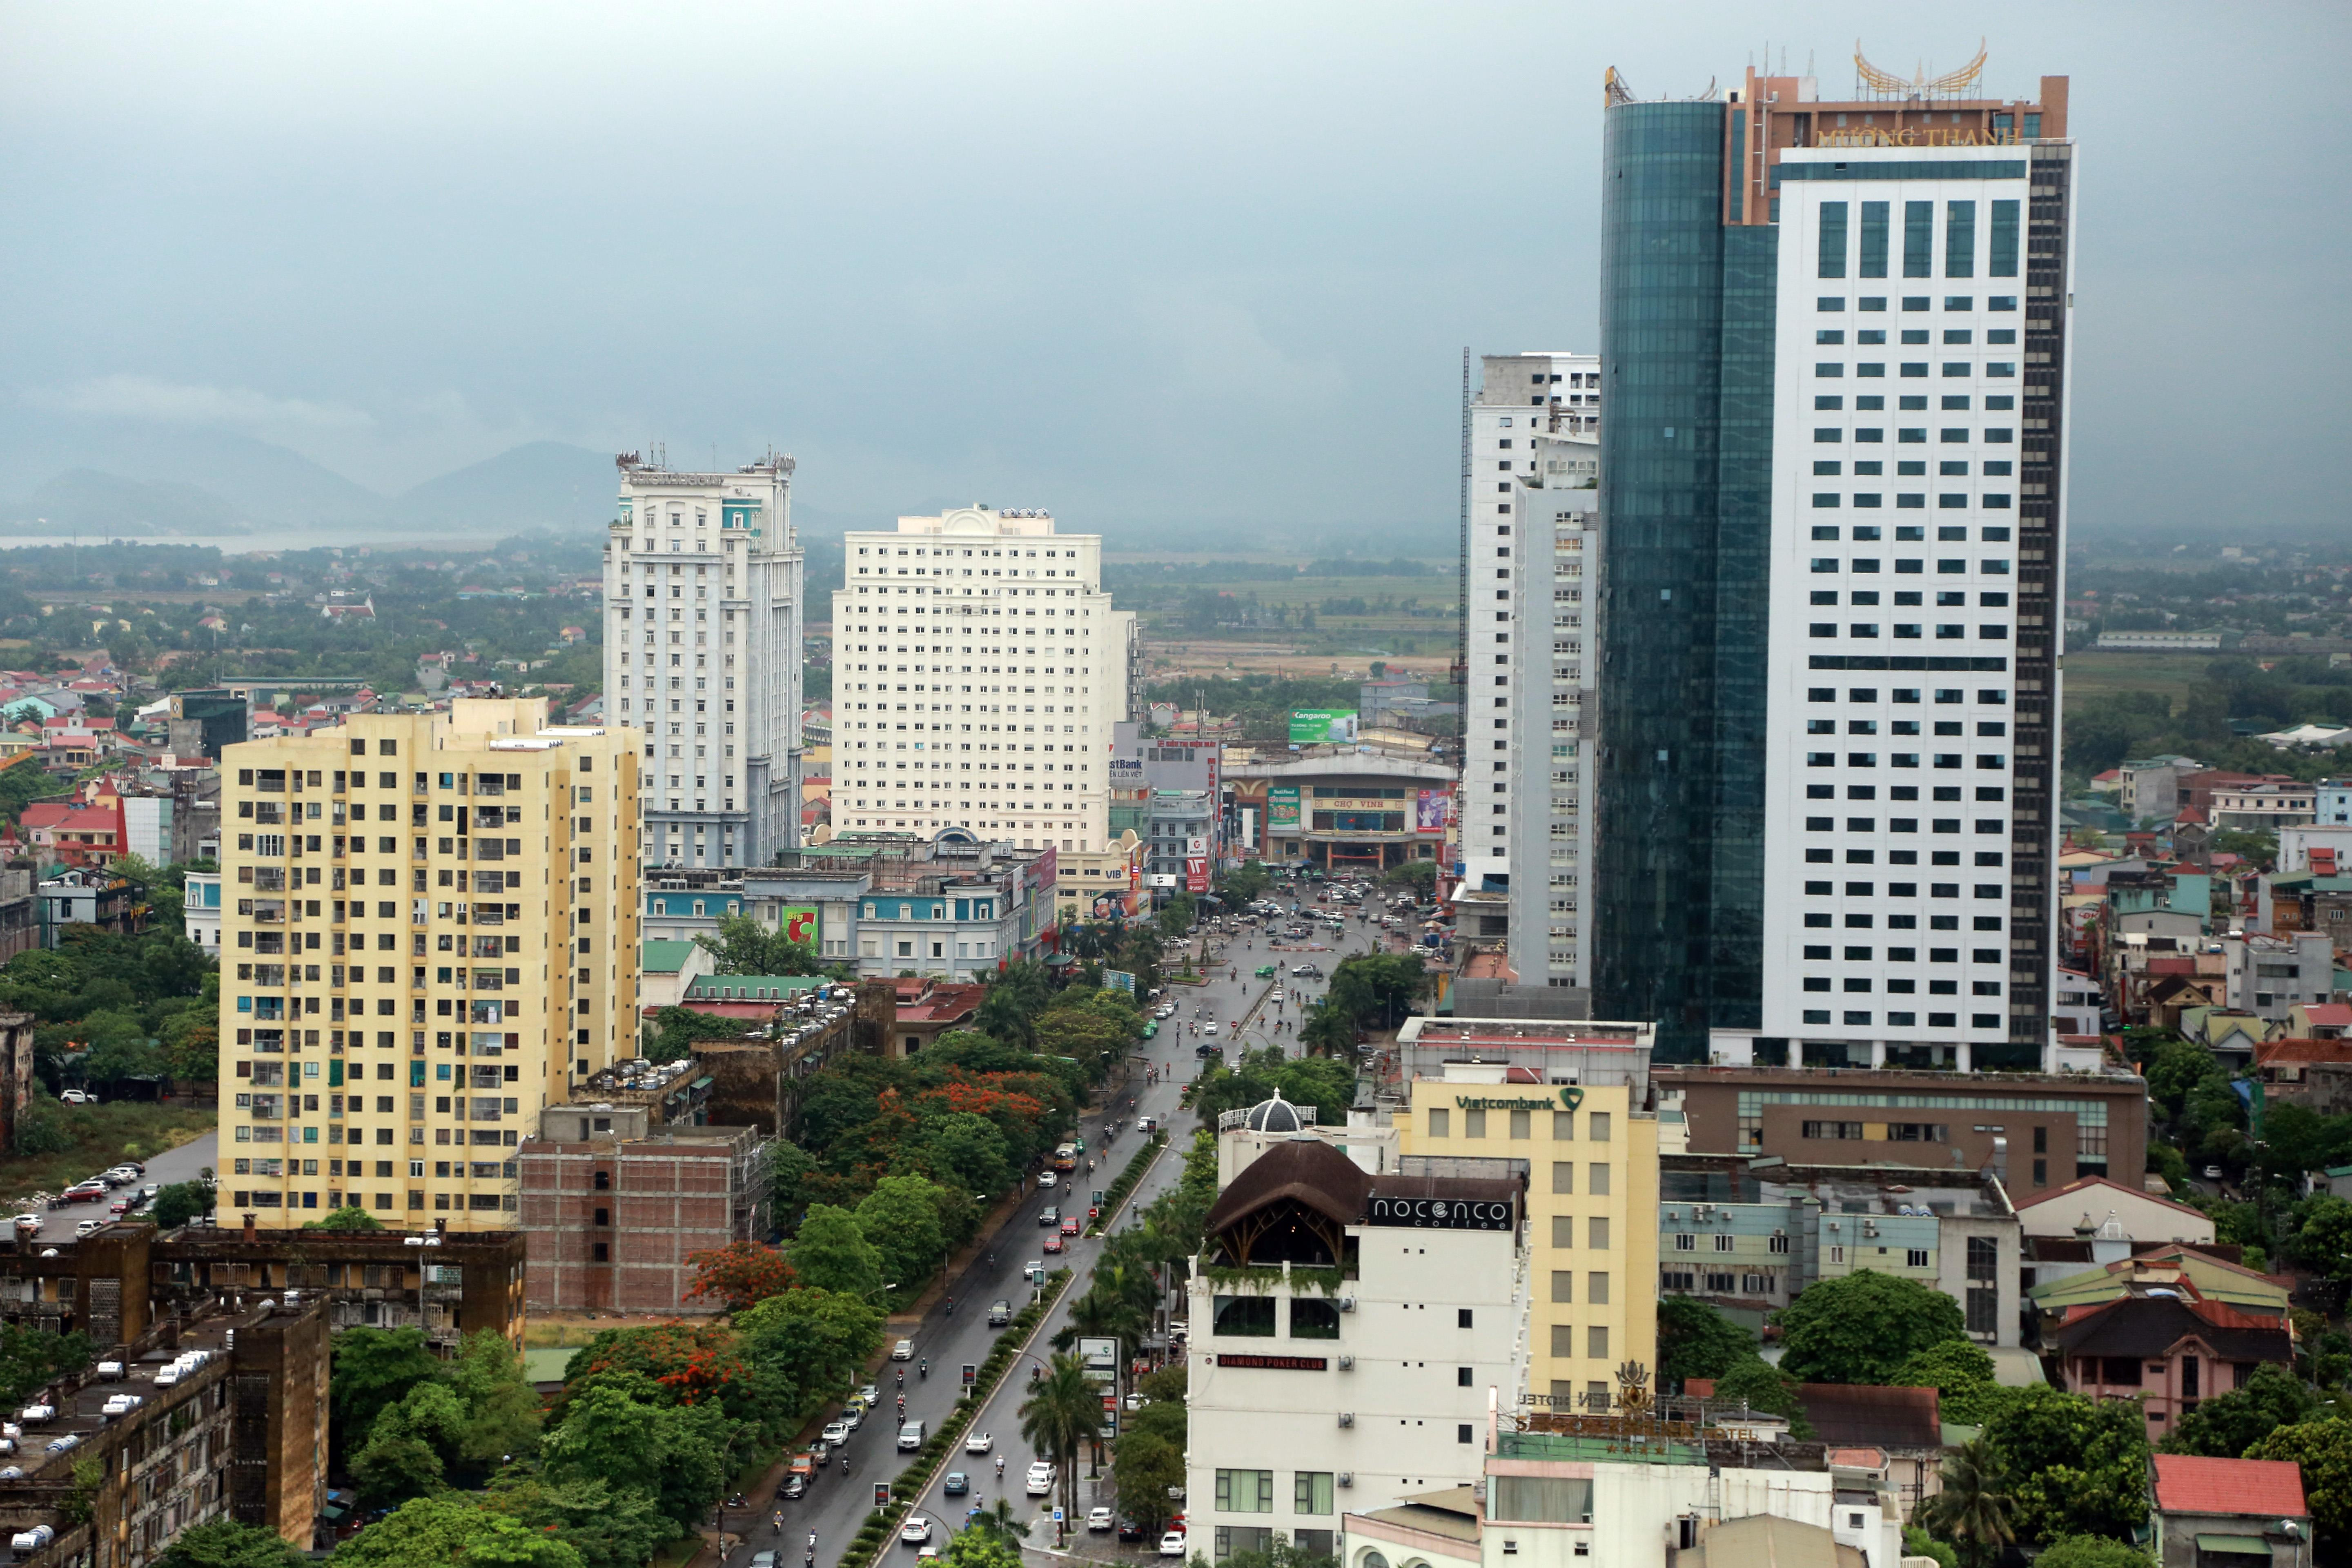 Phường Quang Trung có mật độ chung cư cao nhất thành phố Vinh với 10 tòa nhà cao tầng, trong khi diện tích địa bàn chỉ là 0,58km2